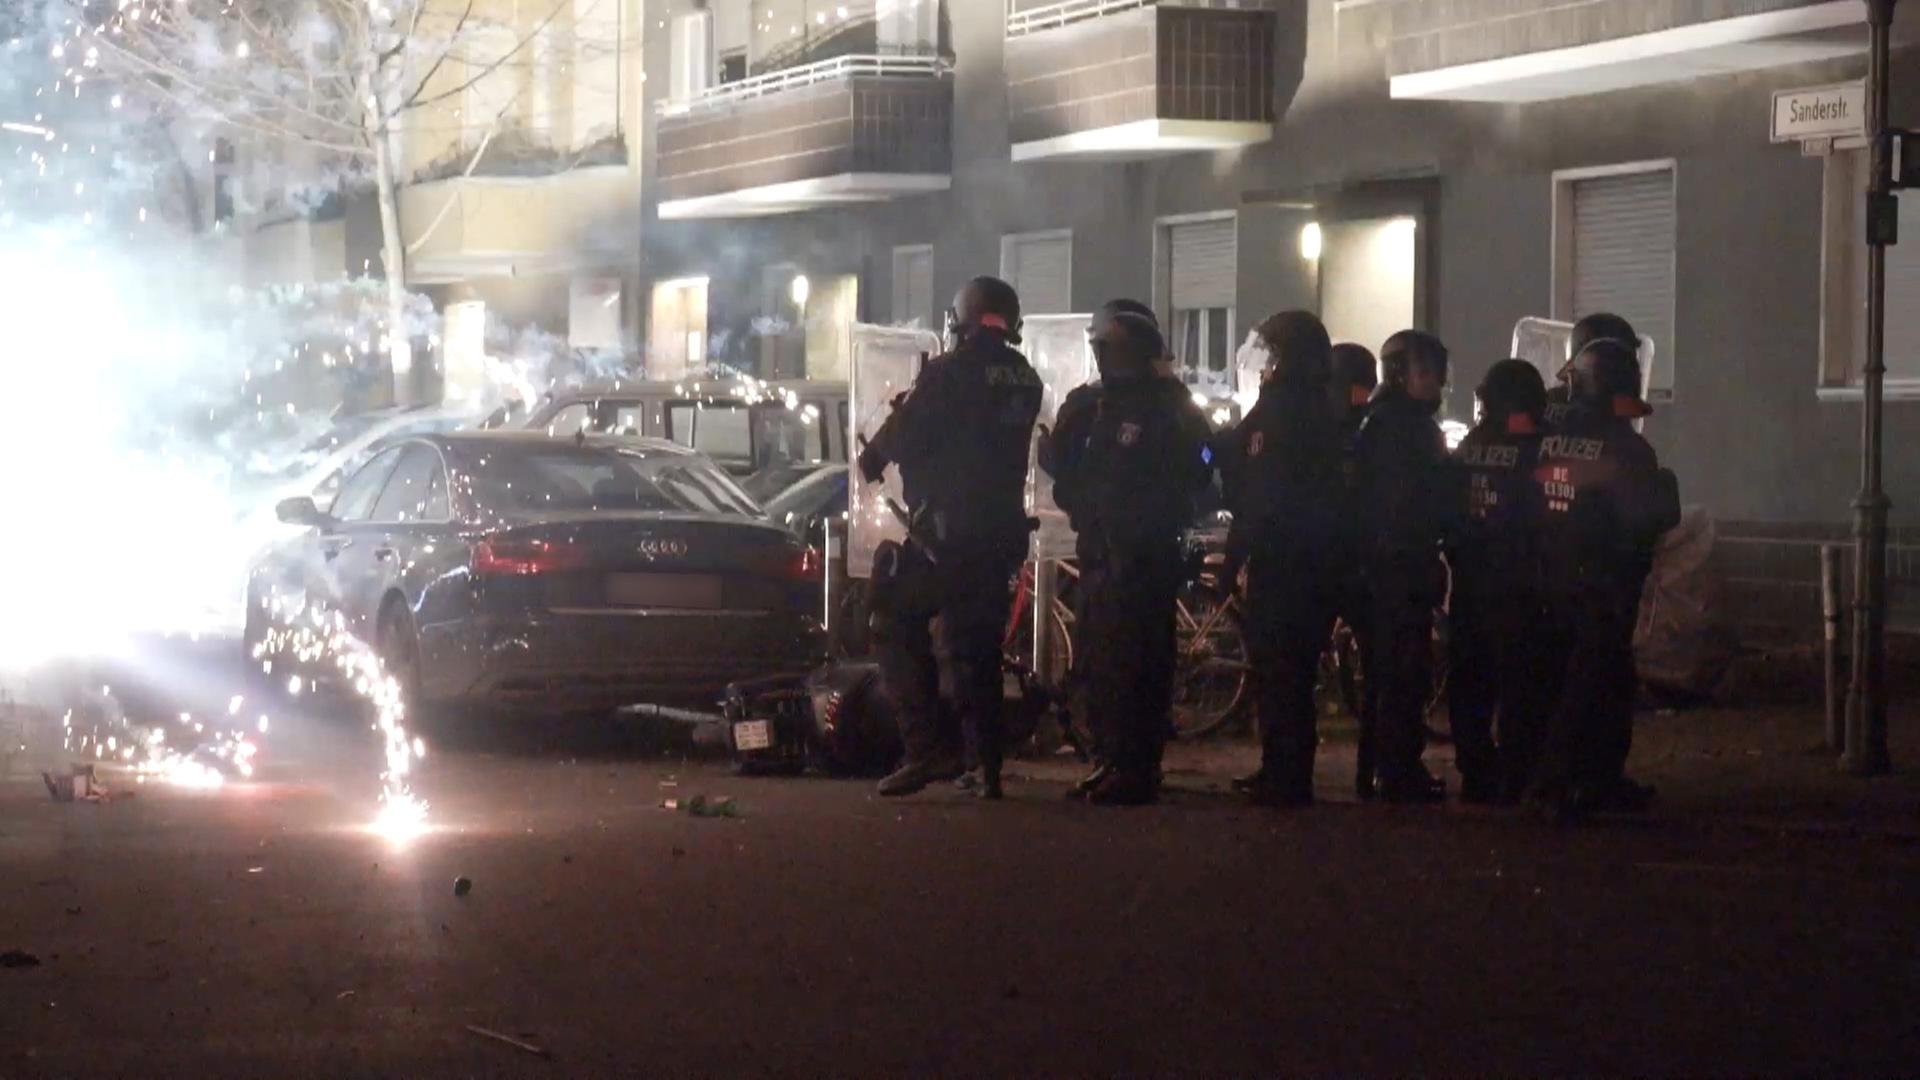 Polizeibeamte stehen hinter explodierendem Feuerwerk.. Berlins Regierende Bürgermeisterin will, dass sich die Innenminister mit dem Thema beschäftigen.